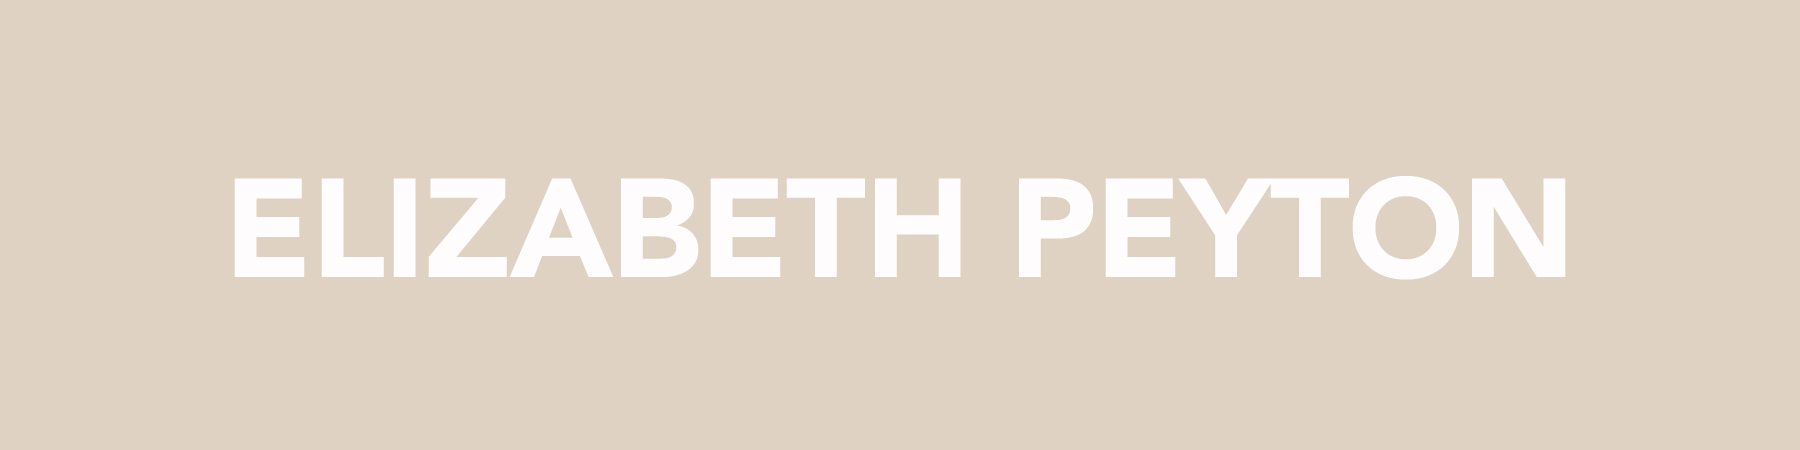 Elizabeth Peyton Prints